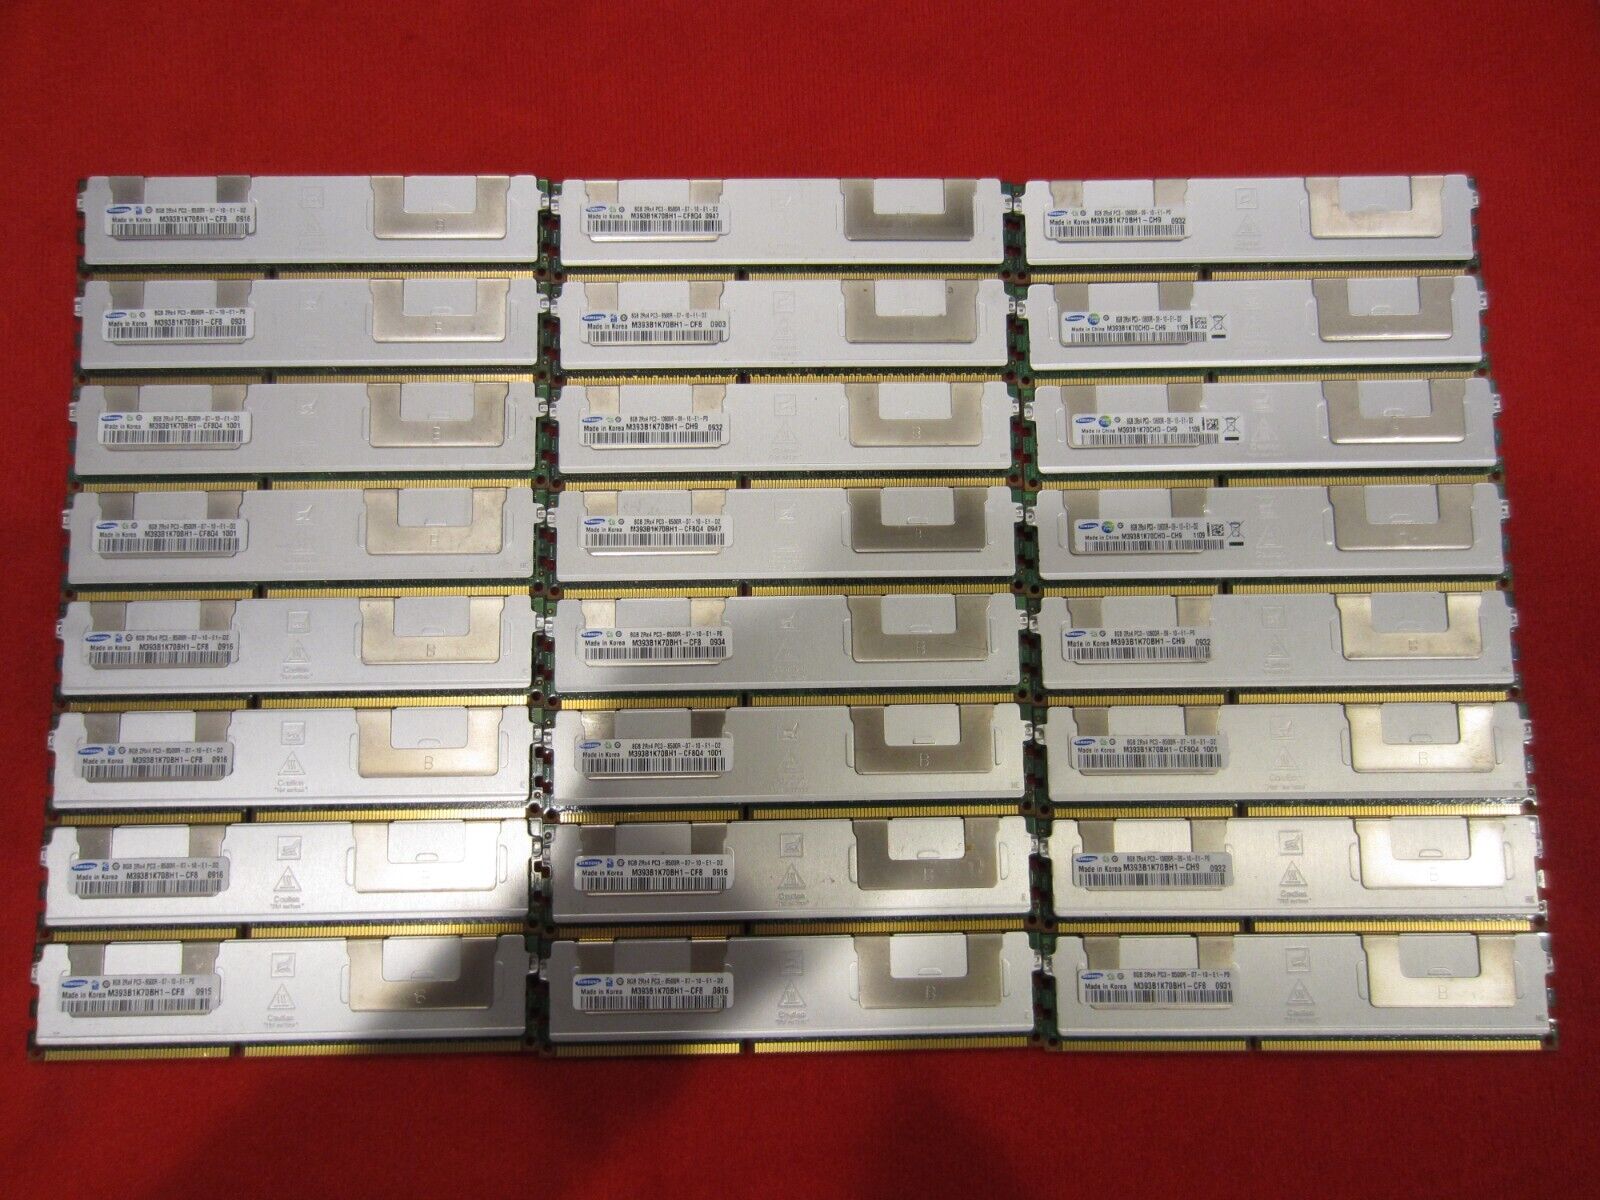 Lot of 44pcs Samsung 8GB 2Rx4 PC3-8500R/10600R DDR3 ECC/REG Server Memory